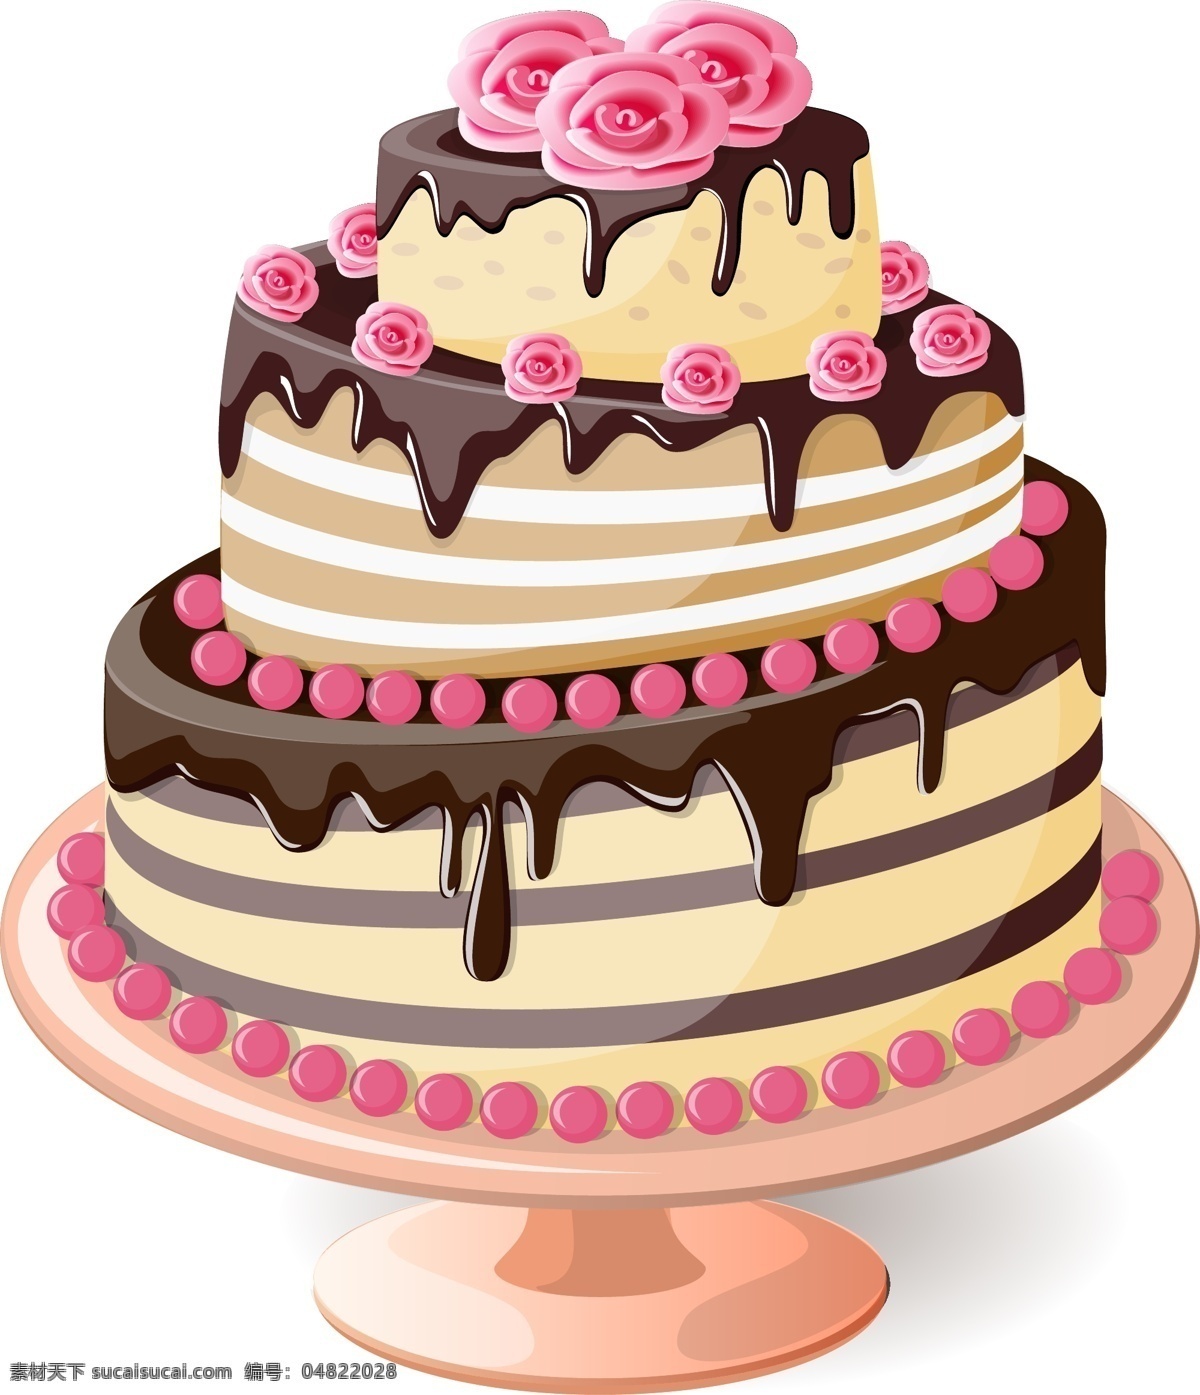 矢量 彩色 蛋糕 元素 手绘 彩色花朵 巧克力蛋糕 生日 ai元素 免扣元素